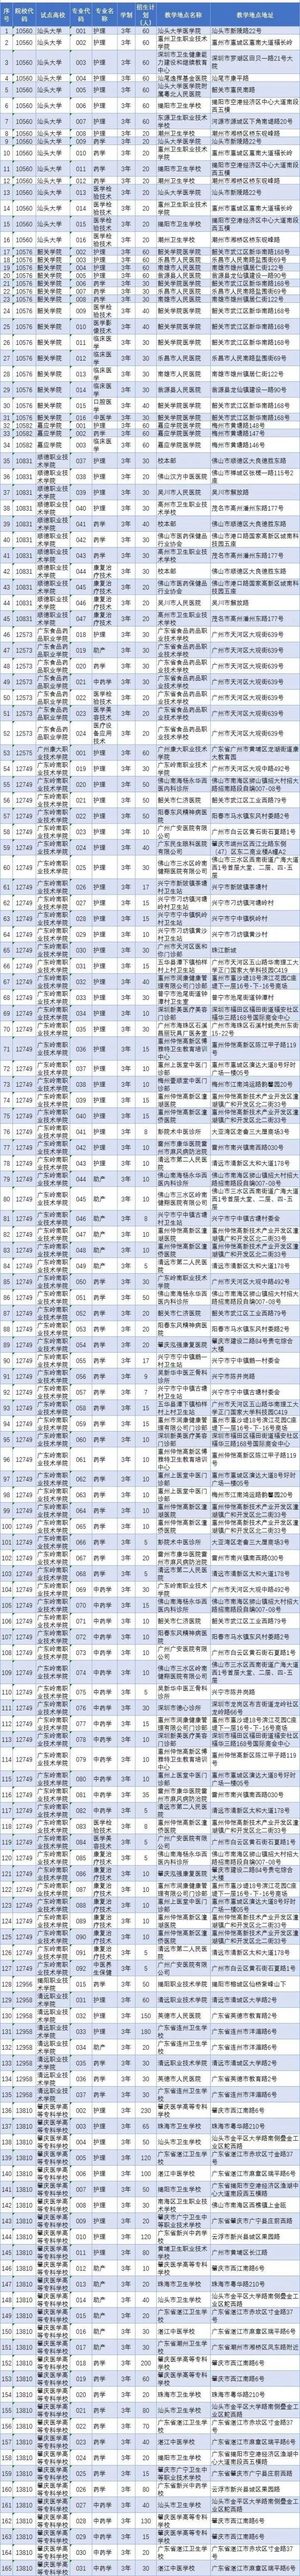 广东省2019年第二期高职扩招正式开始报名 附招生计划表